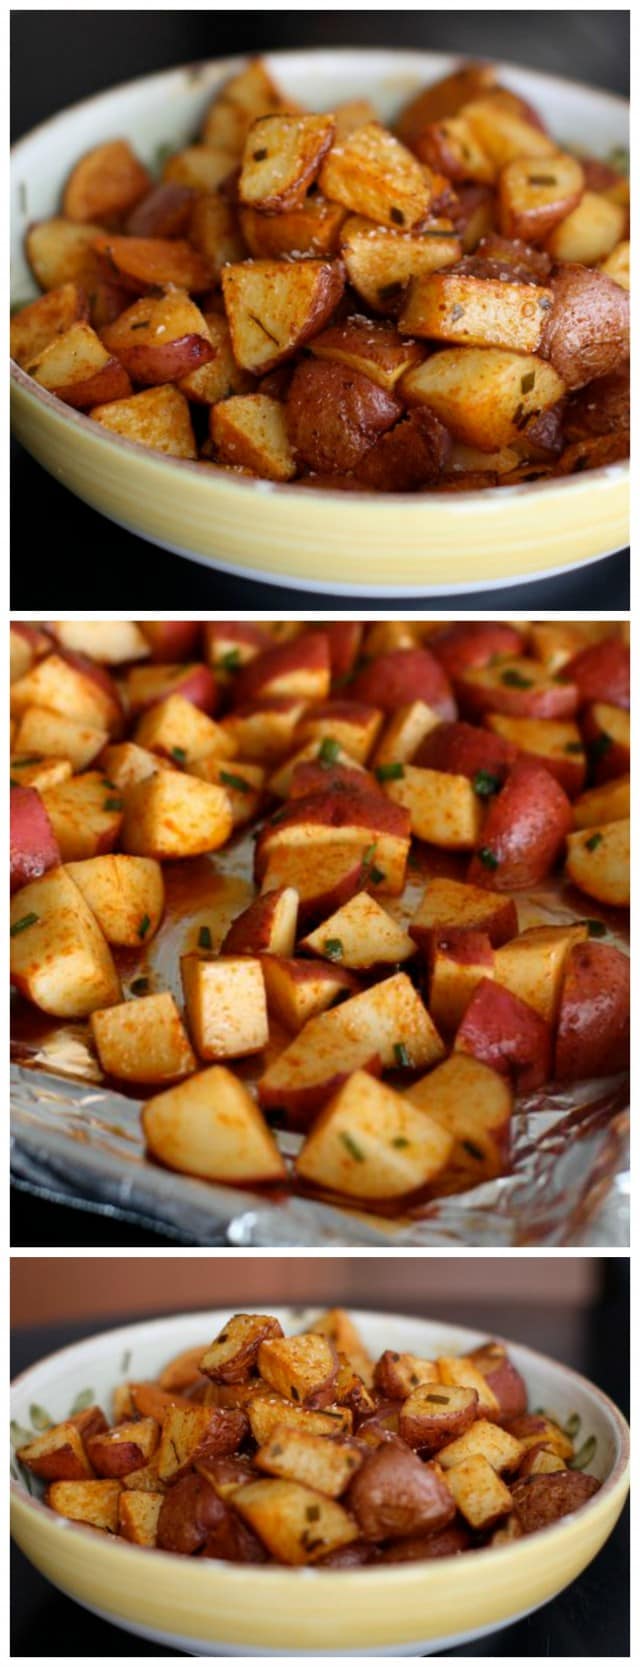 Geröstete rote Kartoffeln mit geräuchertem Paprika sind eine einfache und gesunde Beilage für jede Mahlzeit.